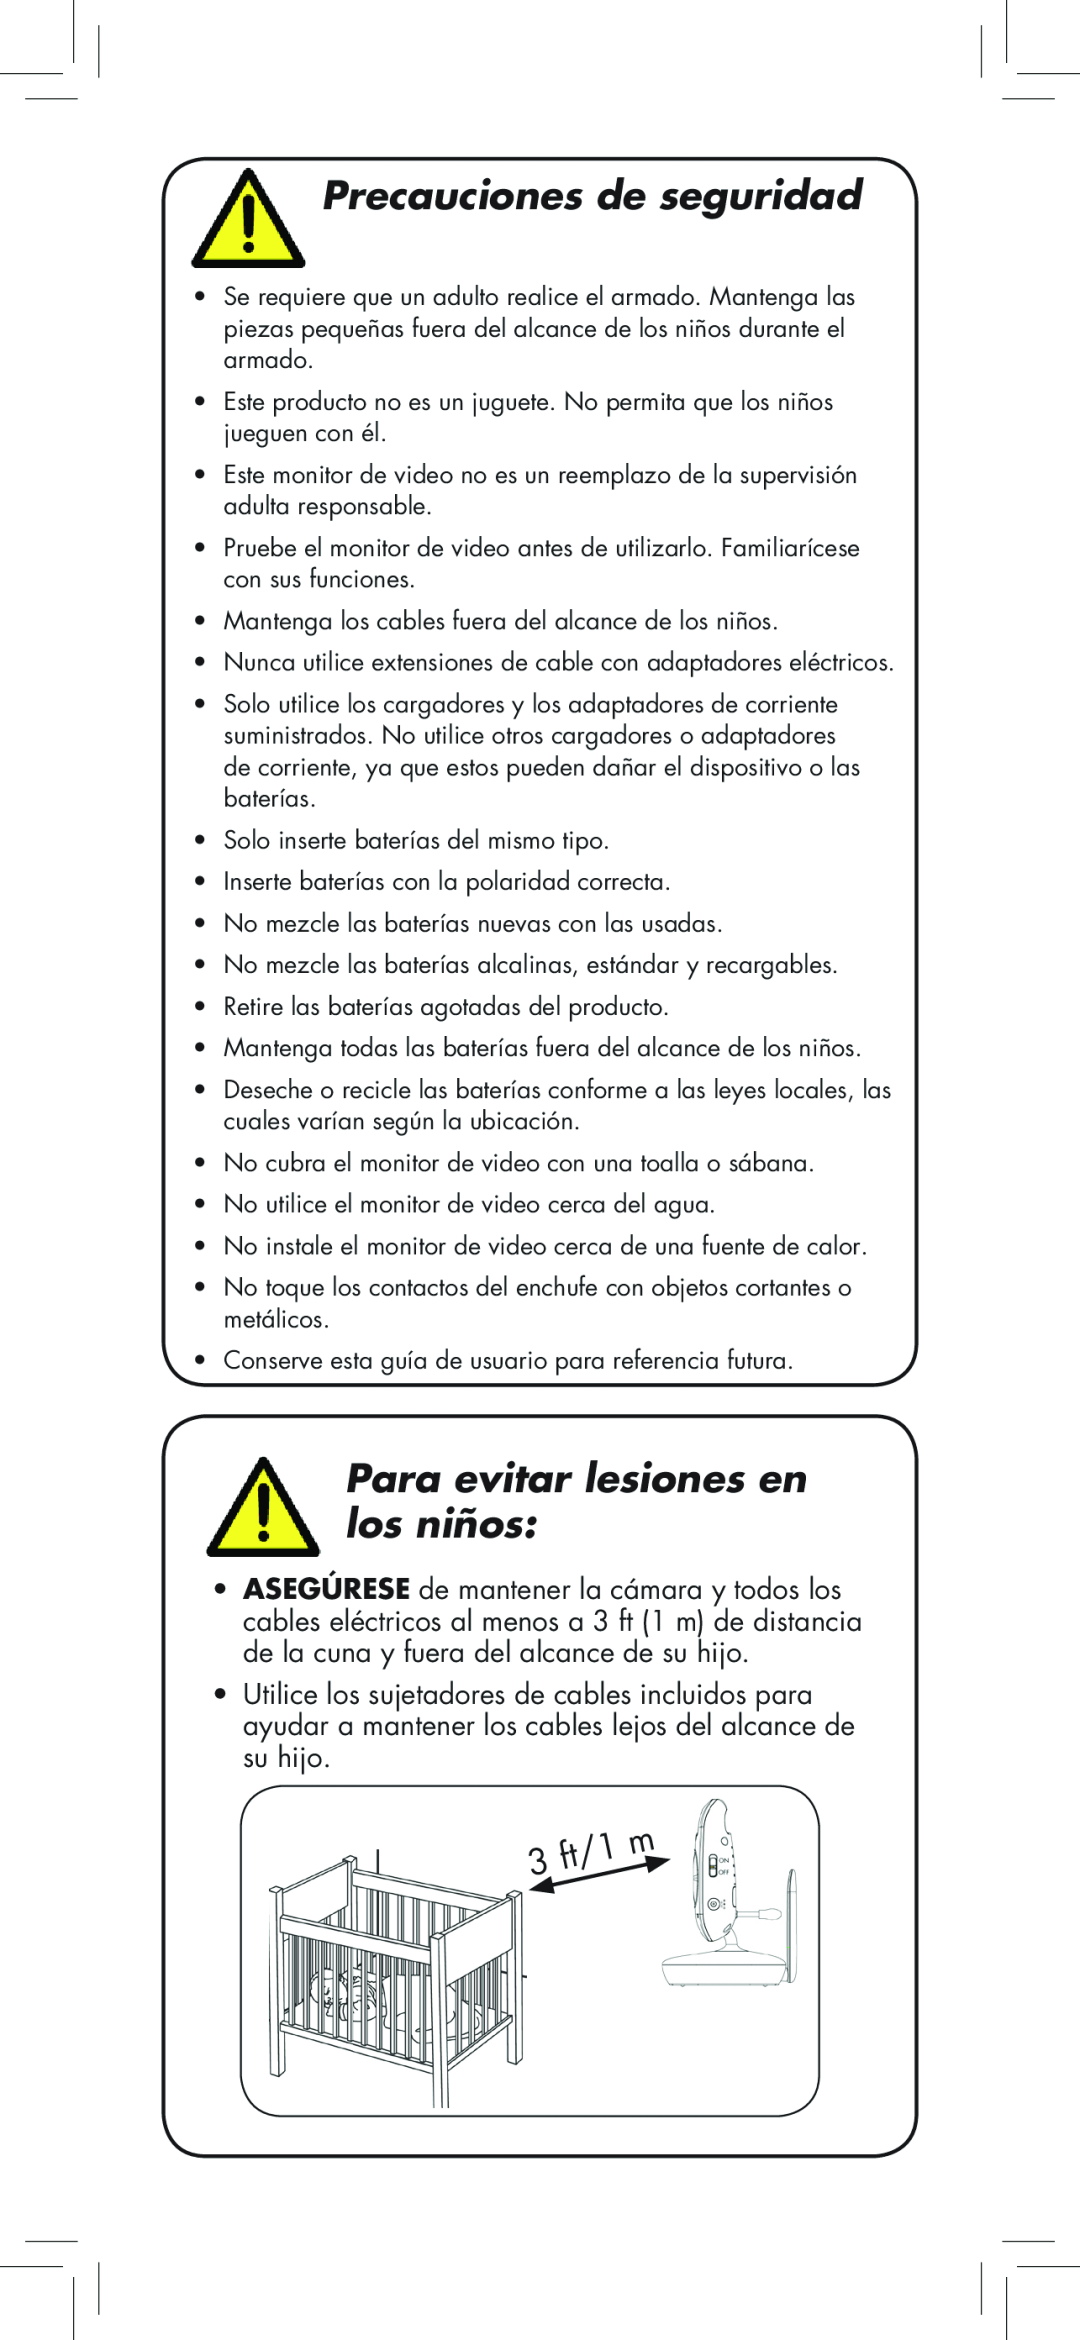 LOREX Technology BB2411 manual Precauciones de seguridad, Para evitar lesiones en los niños 